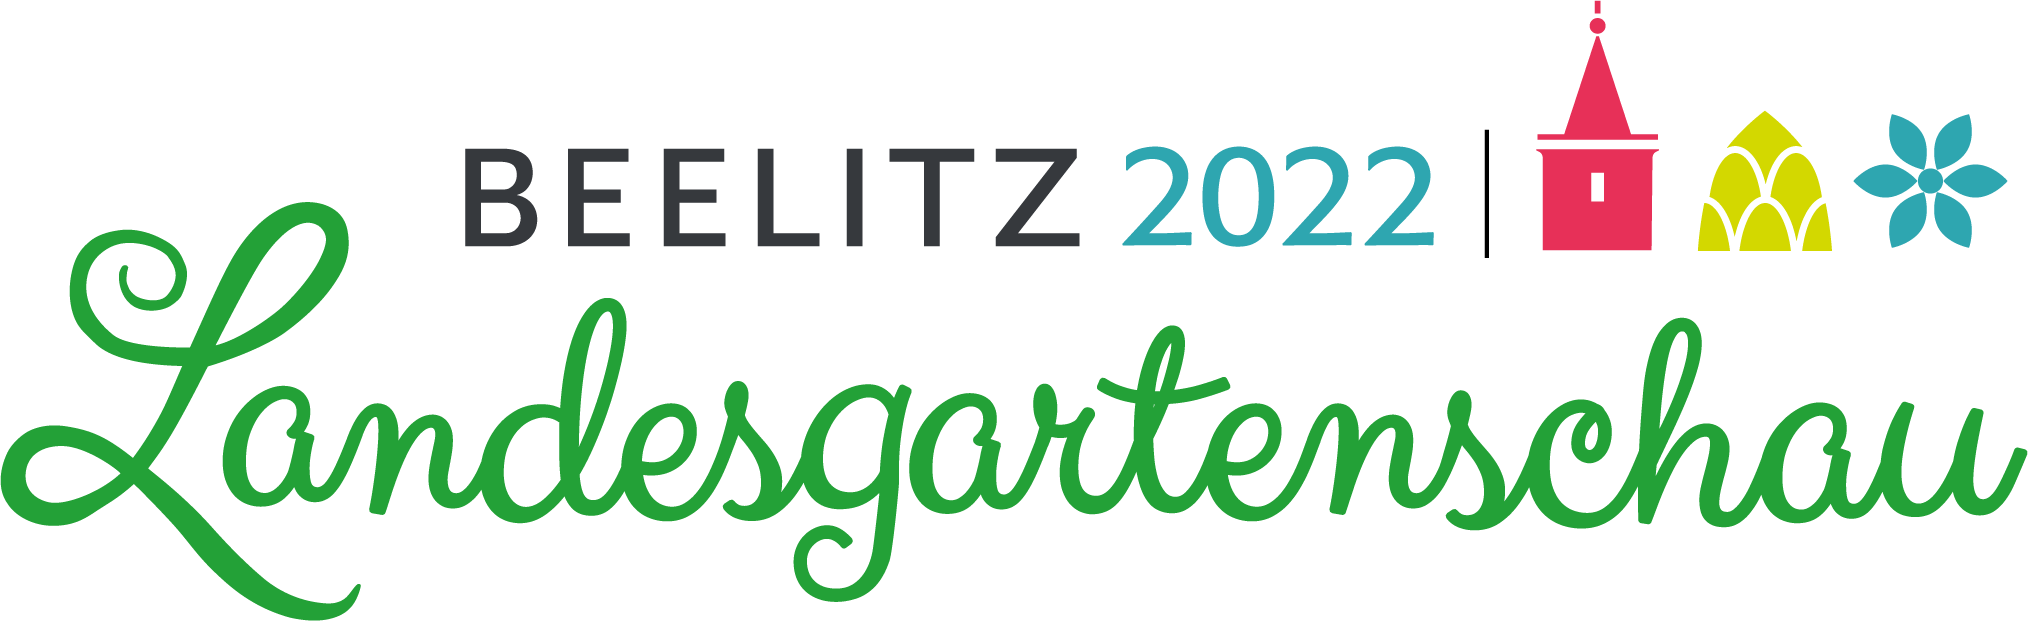 Partners and sponsors_Laga Beelitz Logo_©Landesgartenschau Beelitz 2022